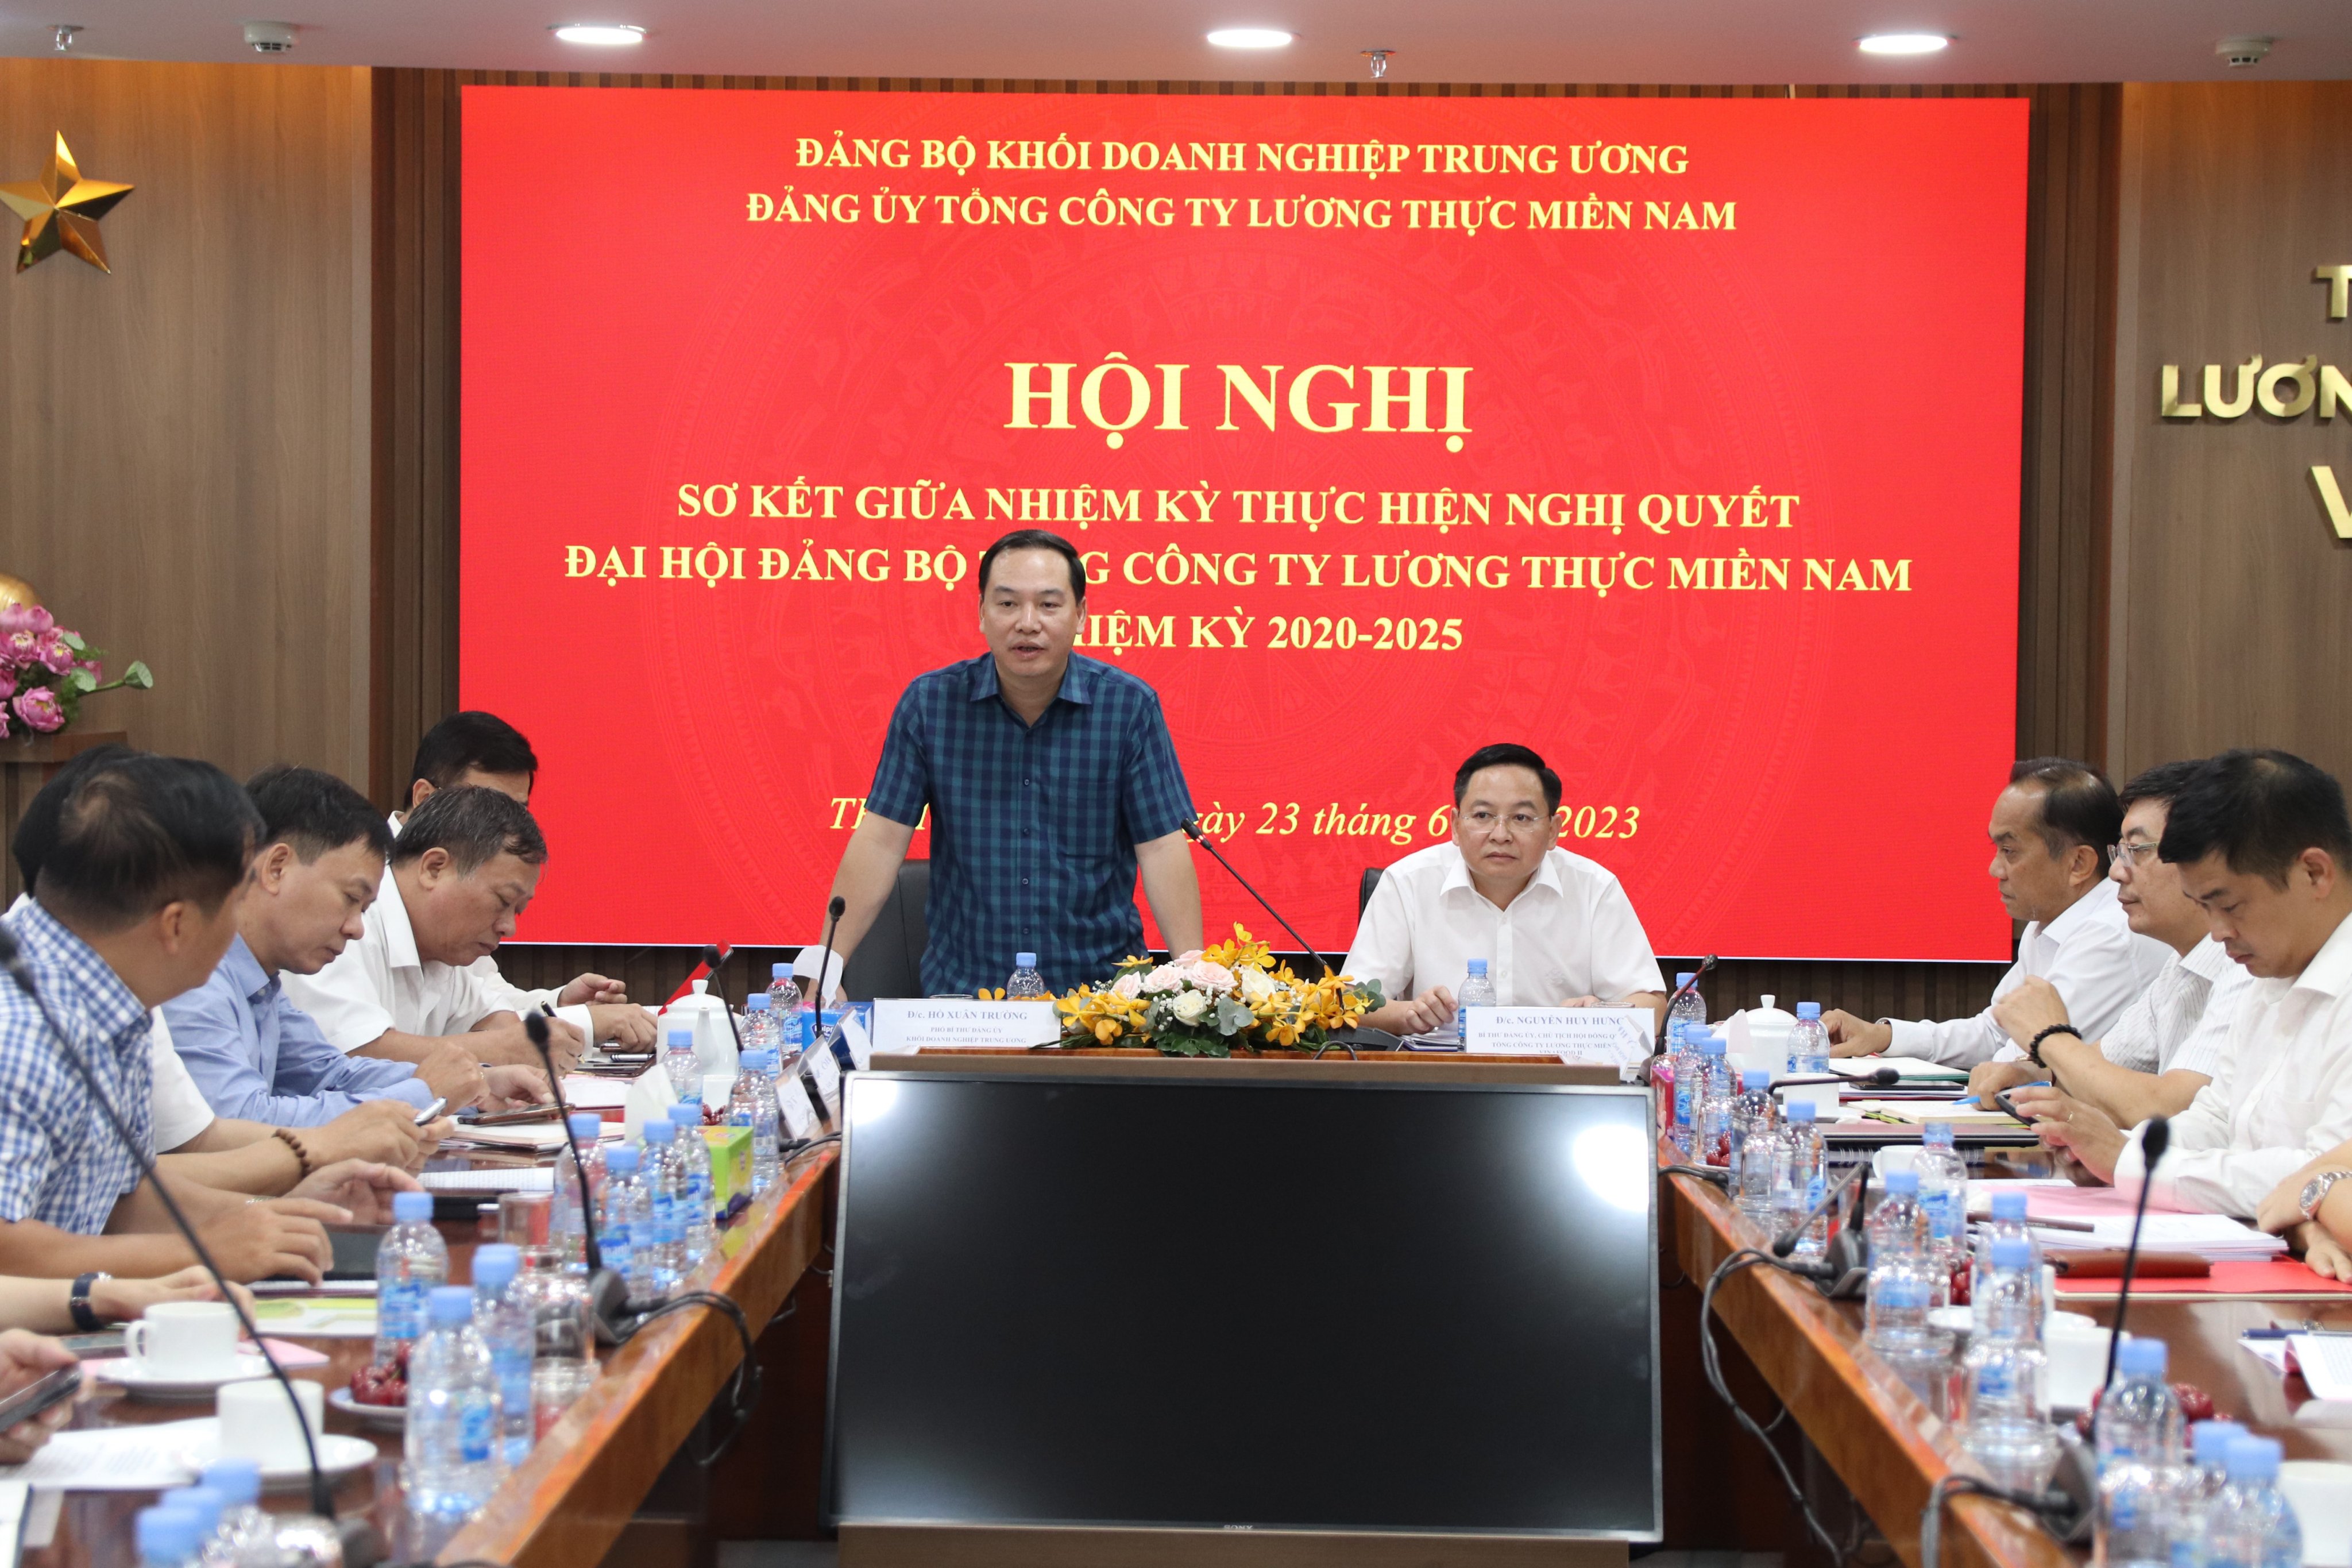 Đồng chí Hồ Xuân Trường – Phó Bí thư Đảng uỷ Khối Doanh nghiệp Trung ương phát biểu tại hội nghị.